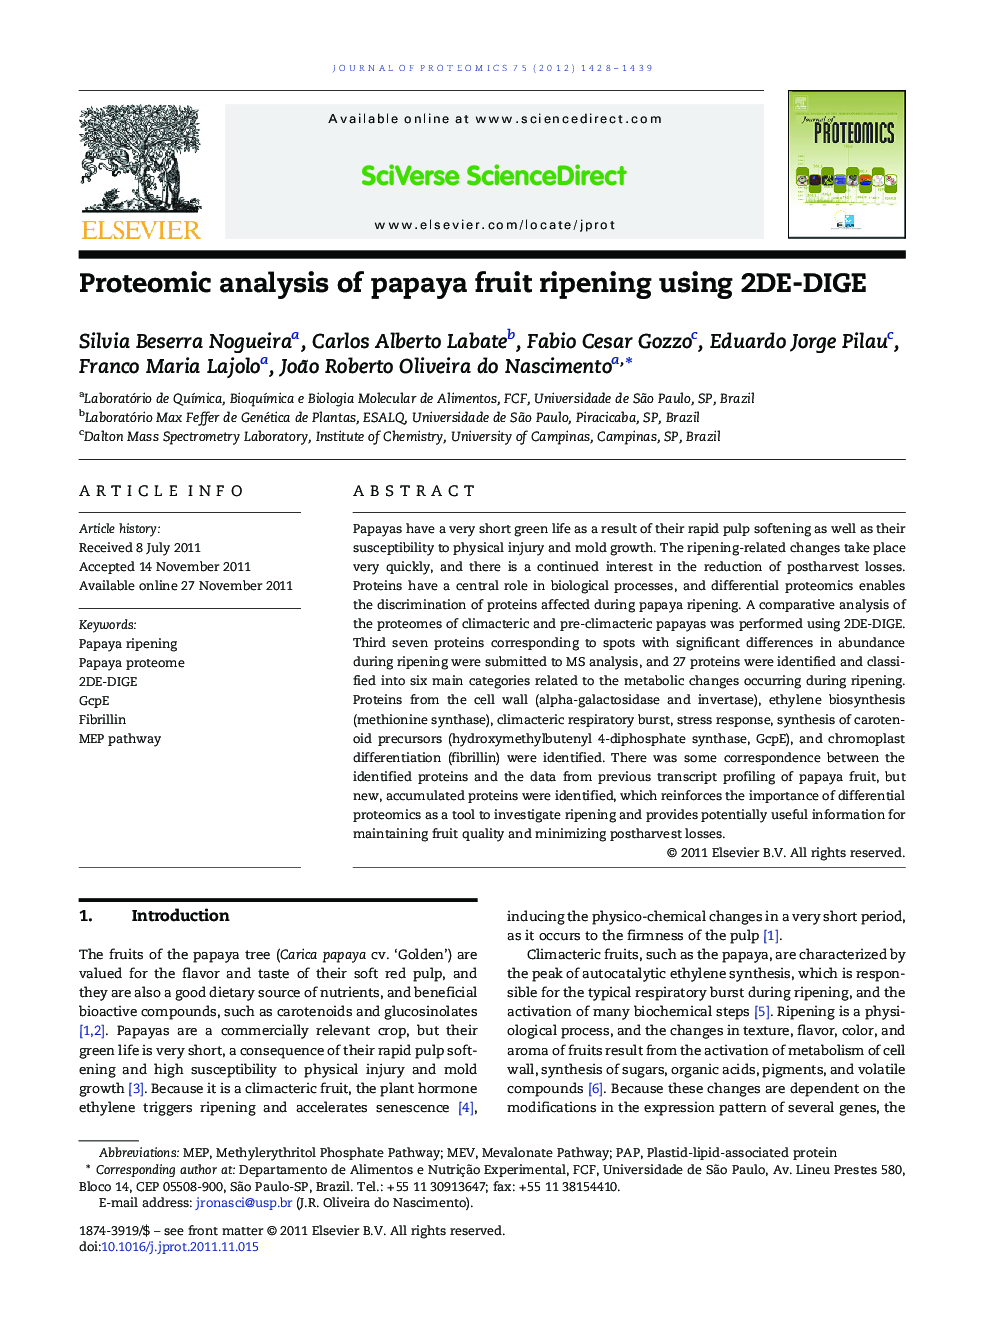 Proteomic analysis of papaya fruit ripening using 2DE-DIGE